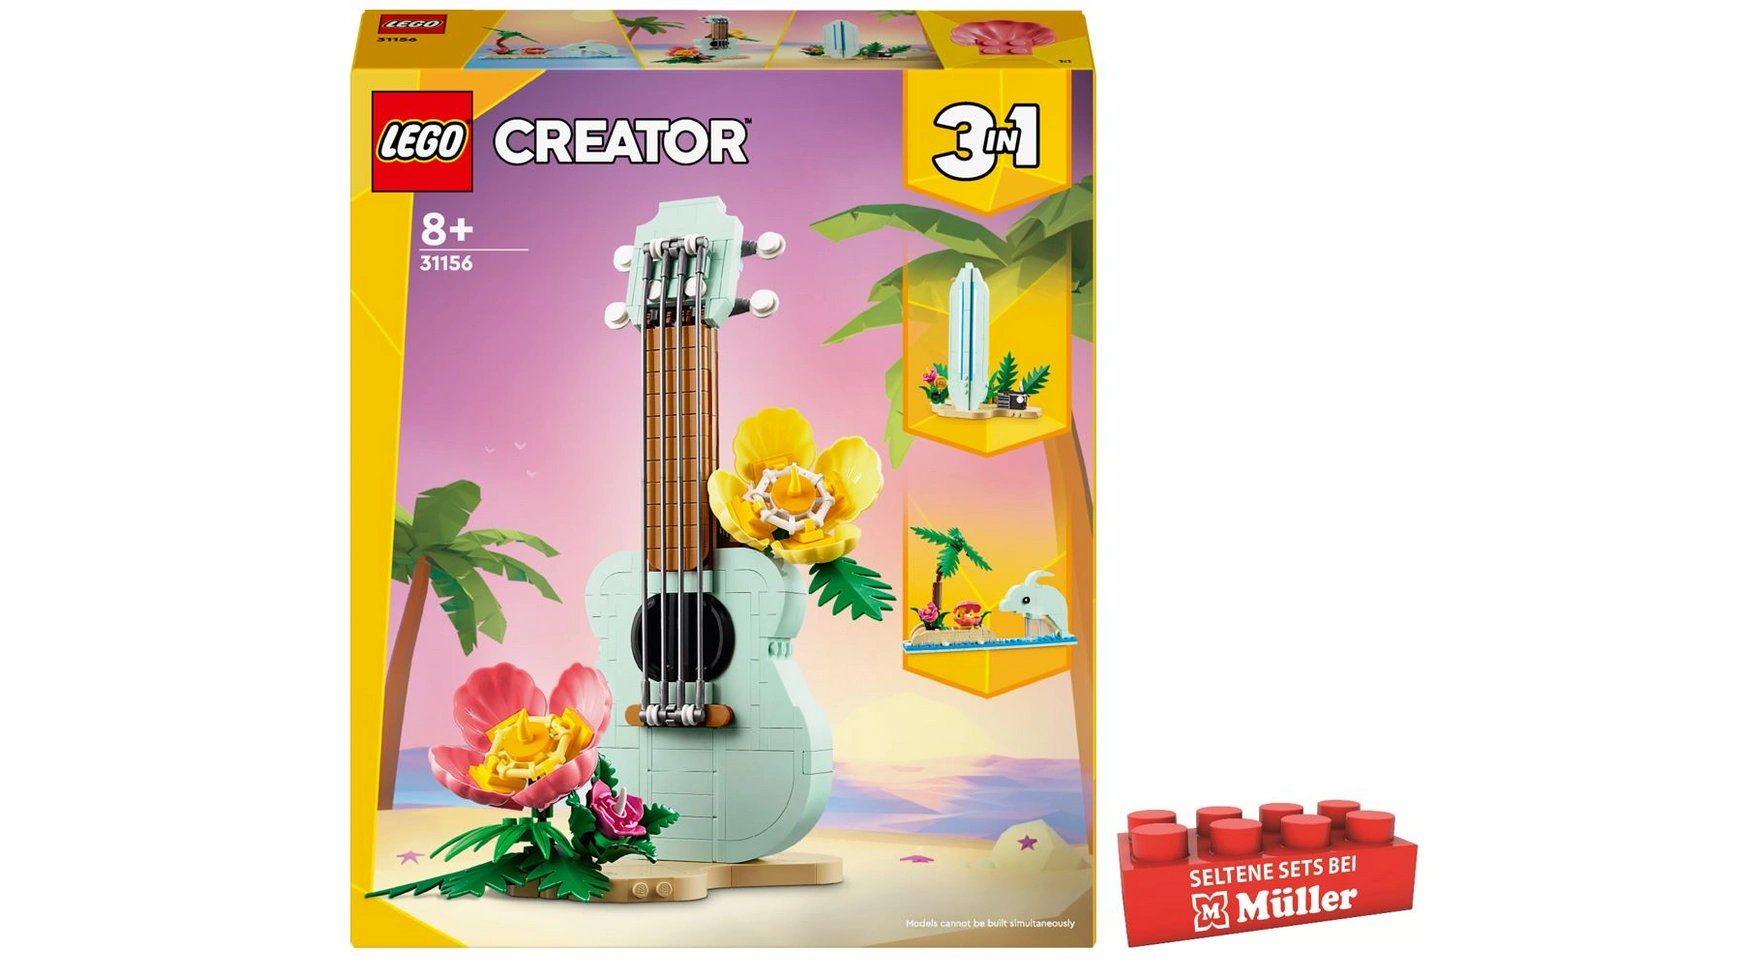 Lego Creator 3in1 Тропическая игрушка для укулеле, доски для серфинга или дельфина